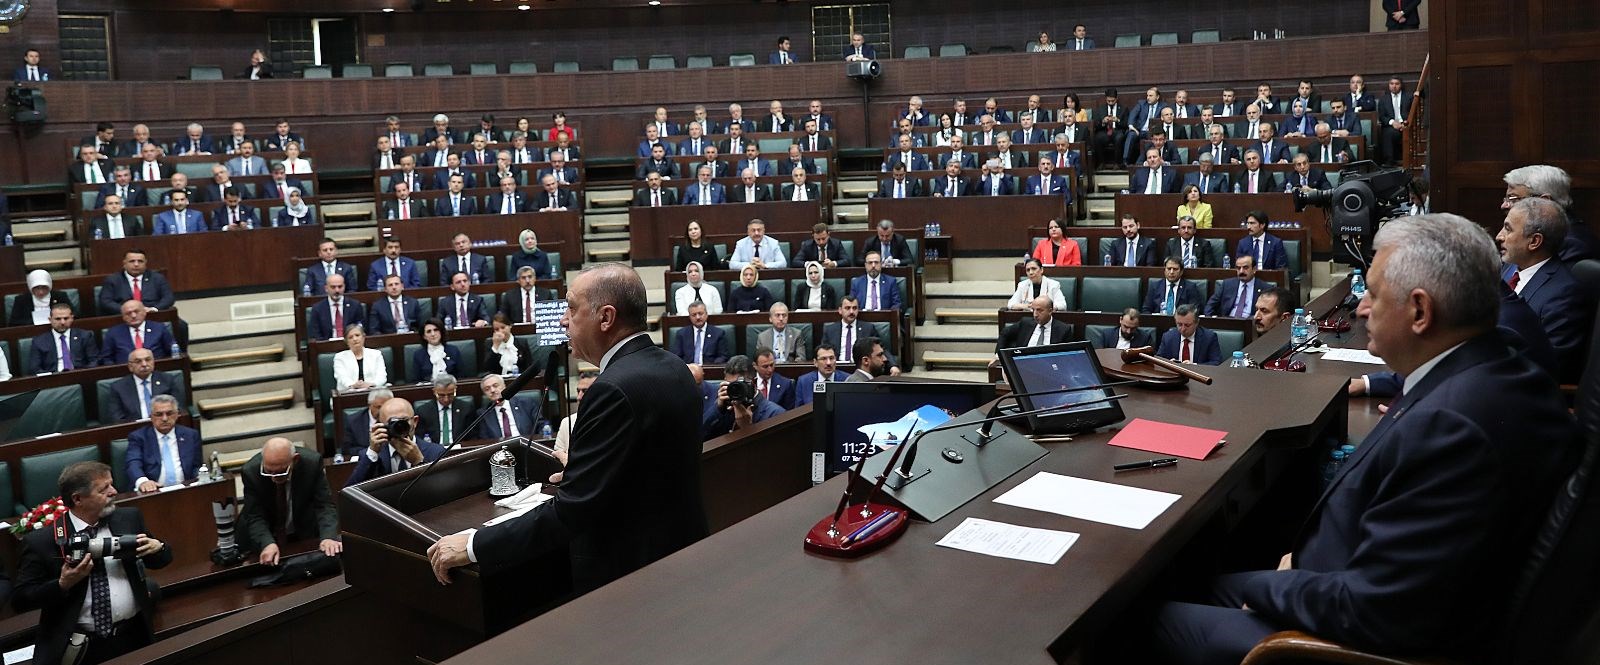 SON DAKİKA: AK Parti’nin Grup Başkanı belli oldu